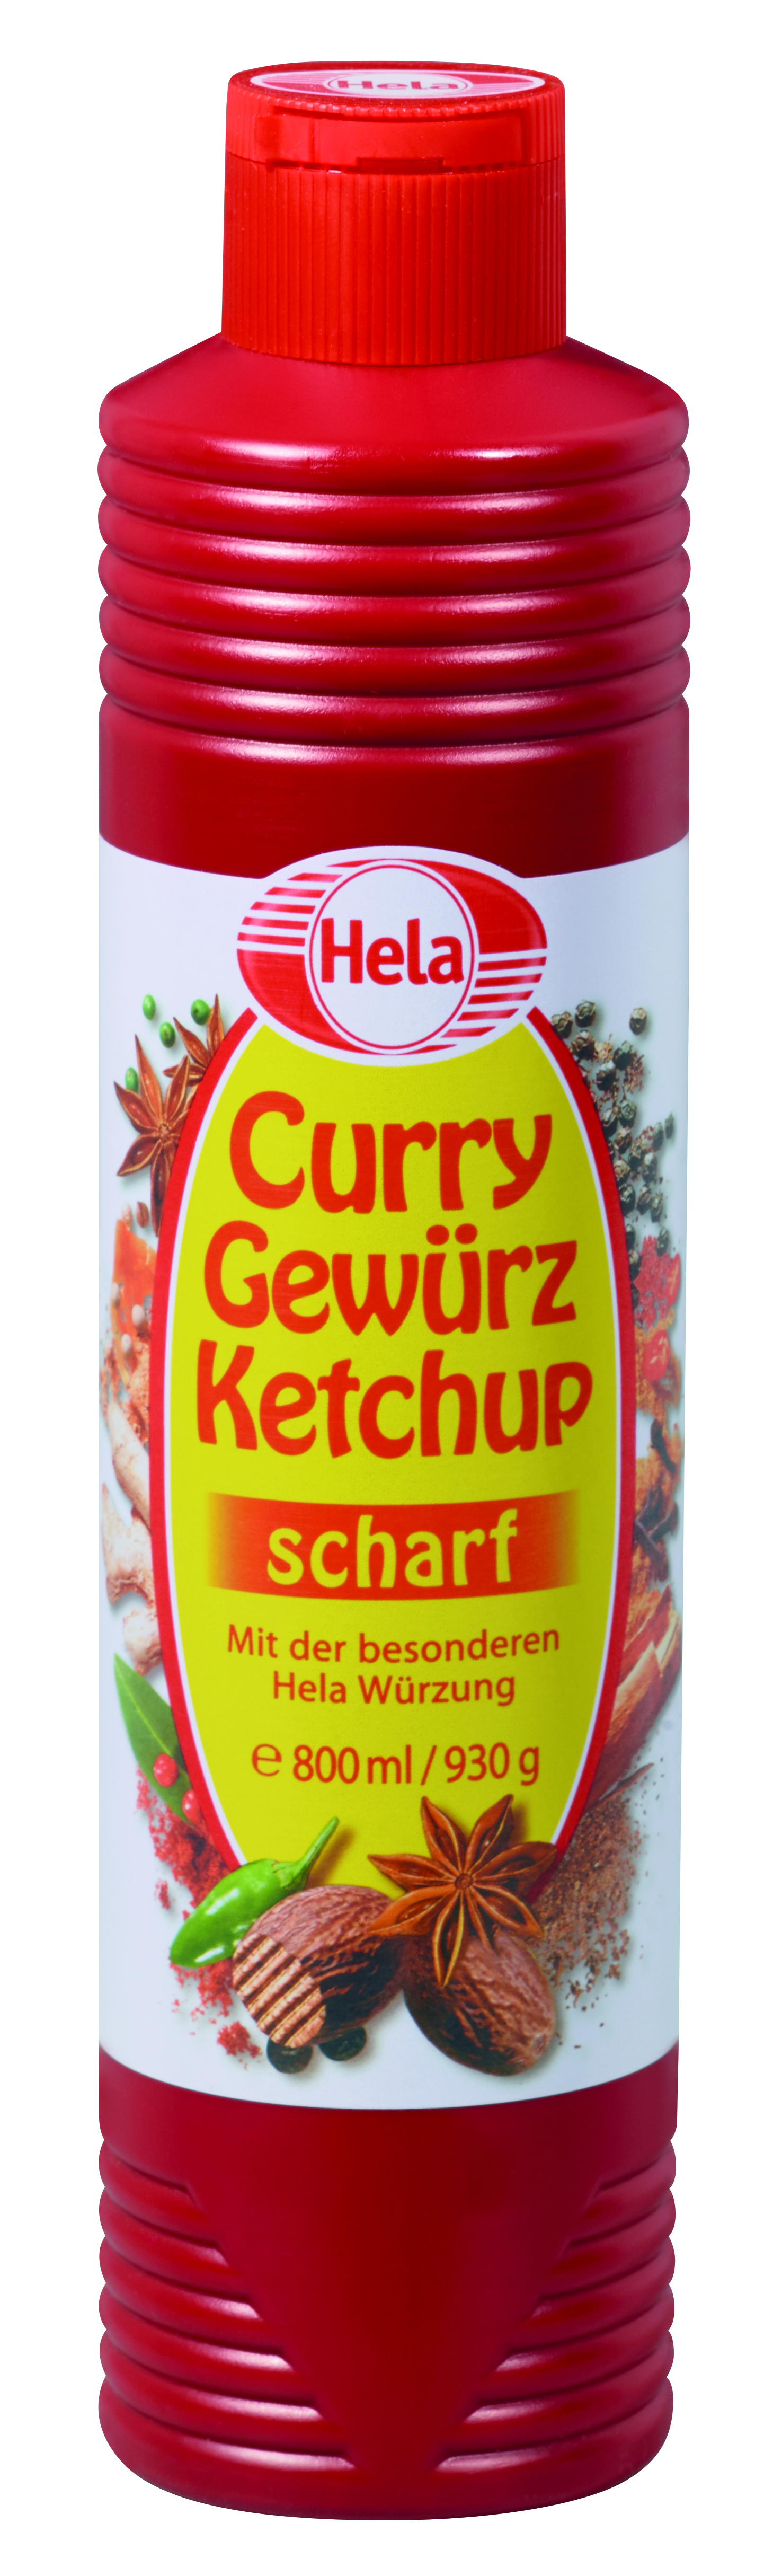 Hela Curry Gewürz Ketchup scharf 800ml Flasche